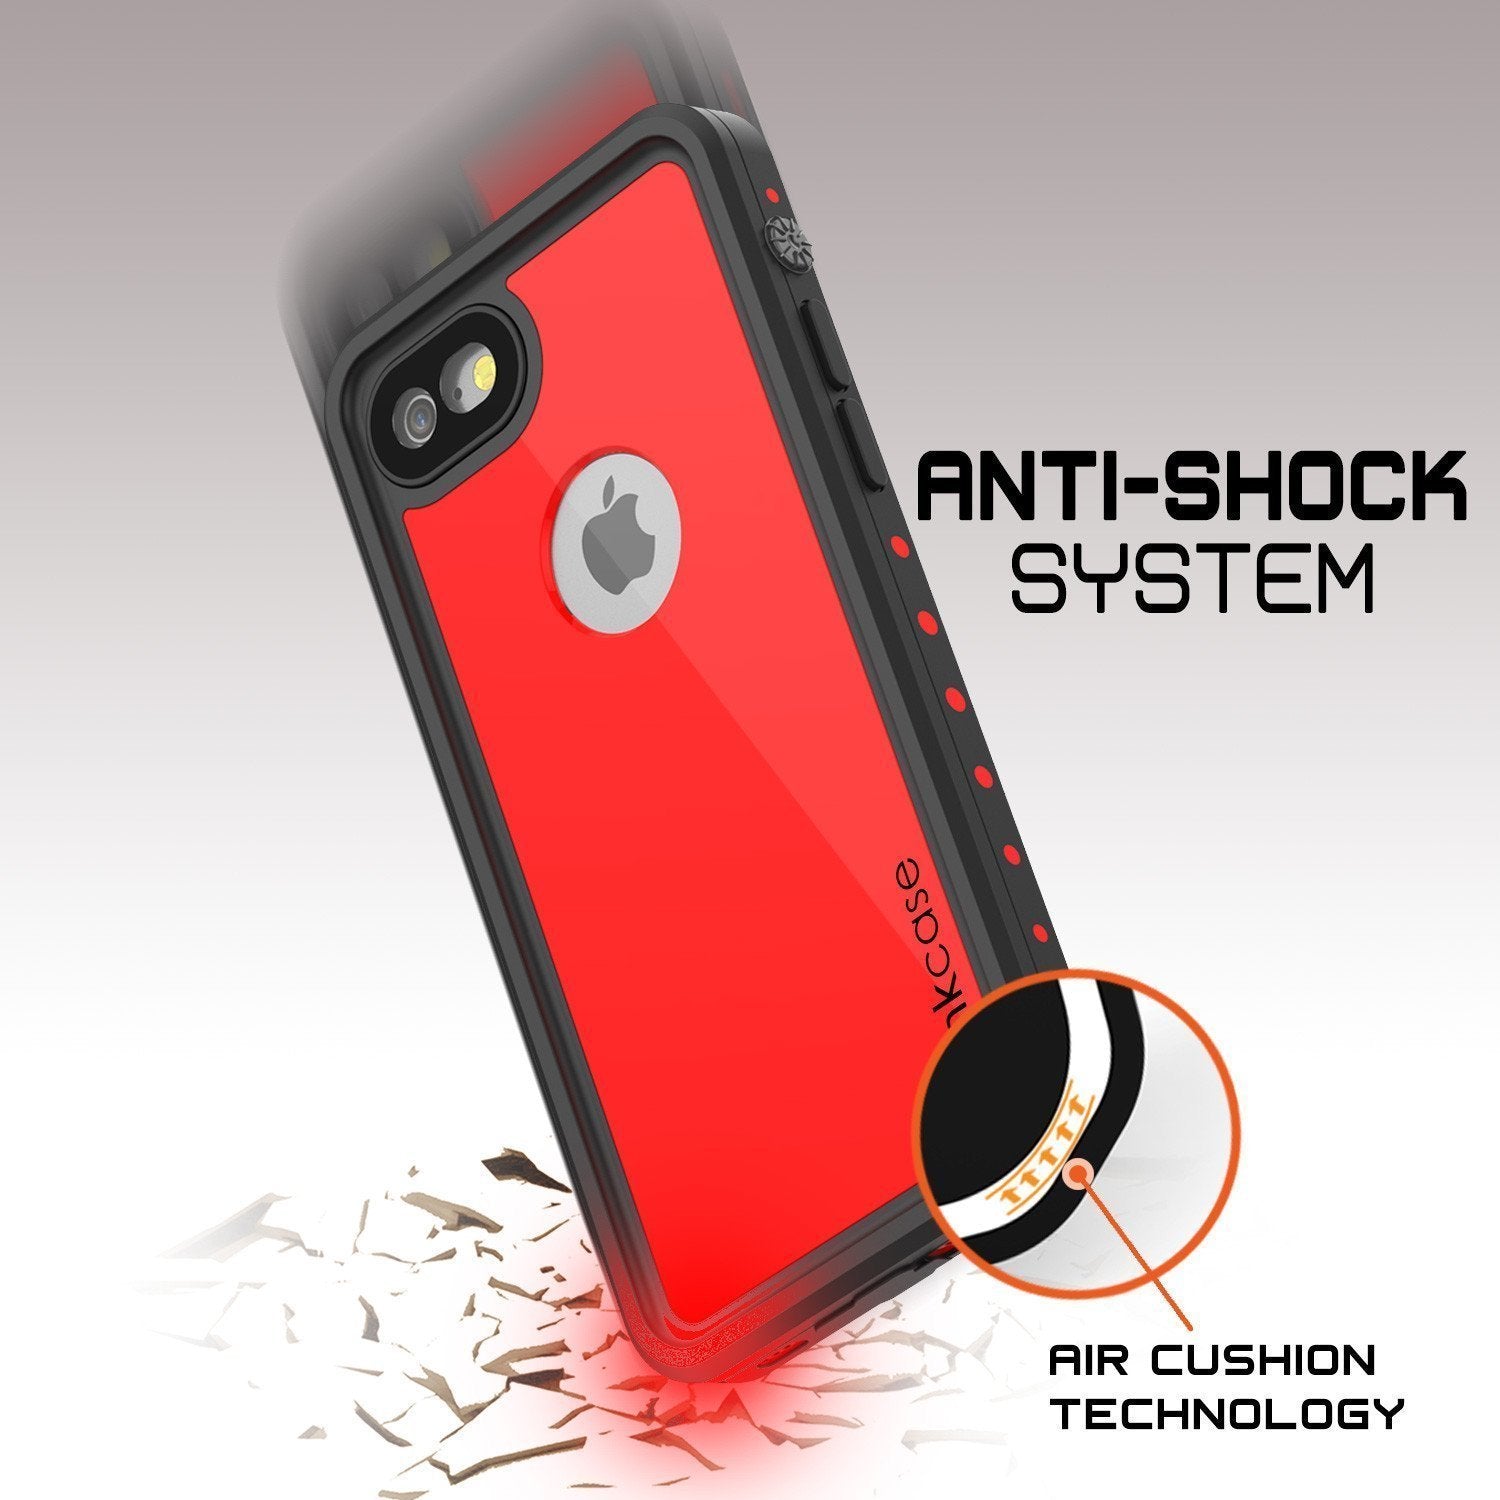 iPhone 8 Waterproof Case, Punkcase [Red] [StudStar Series] [Slim Fit] [IP68 Certified]  [Dirtproof] [Snowproof] - PunkCase NZ